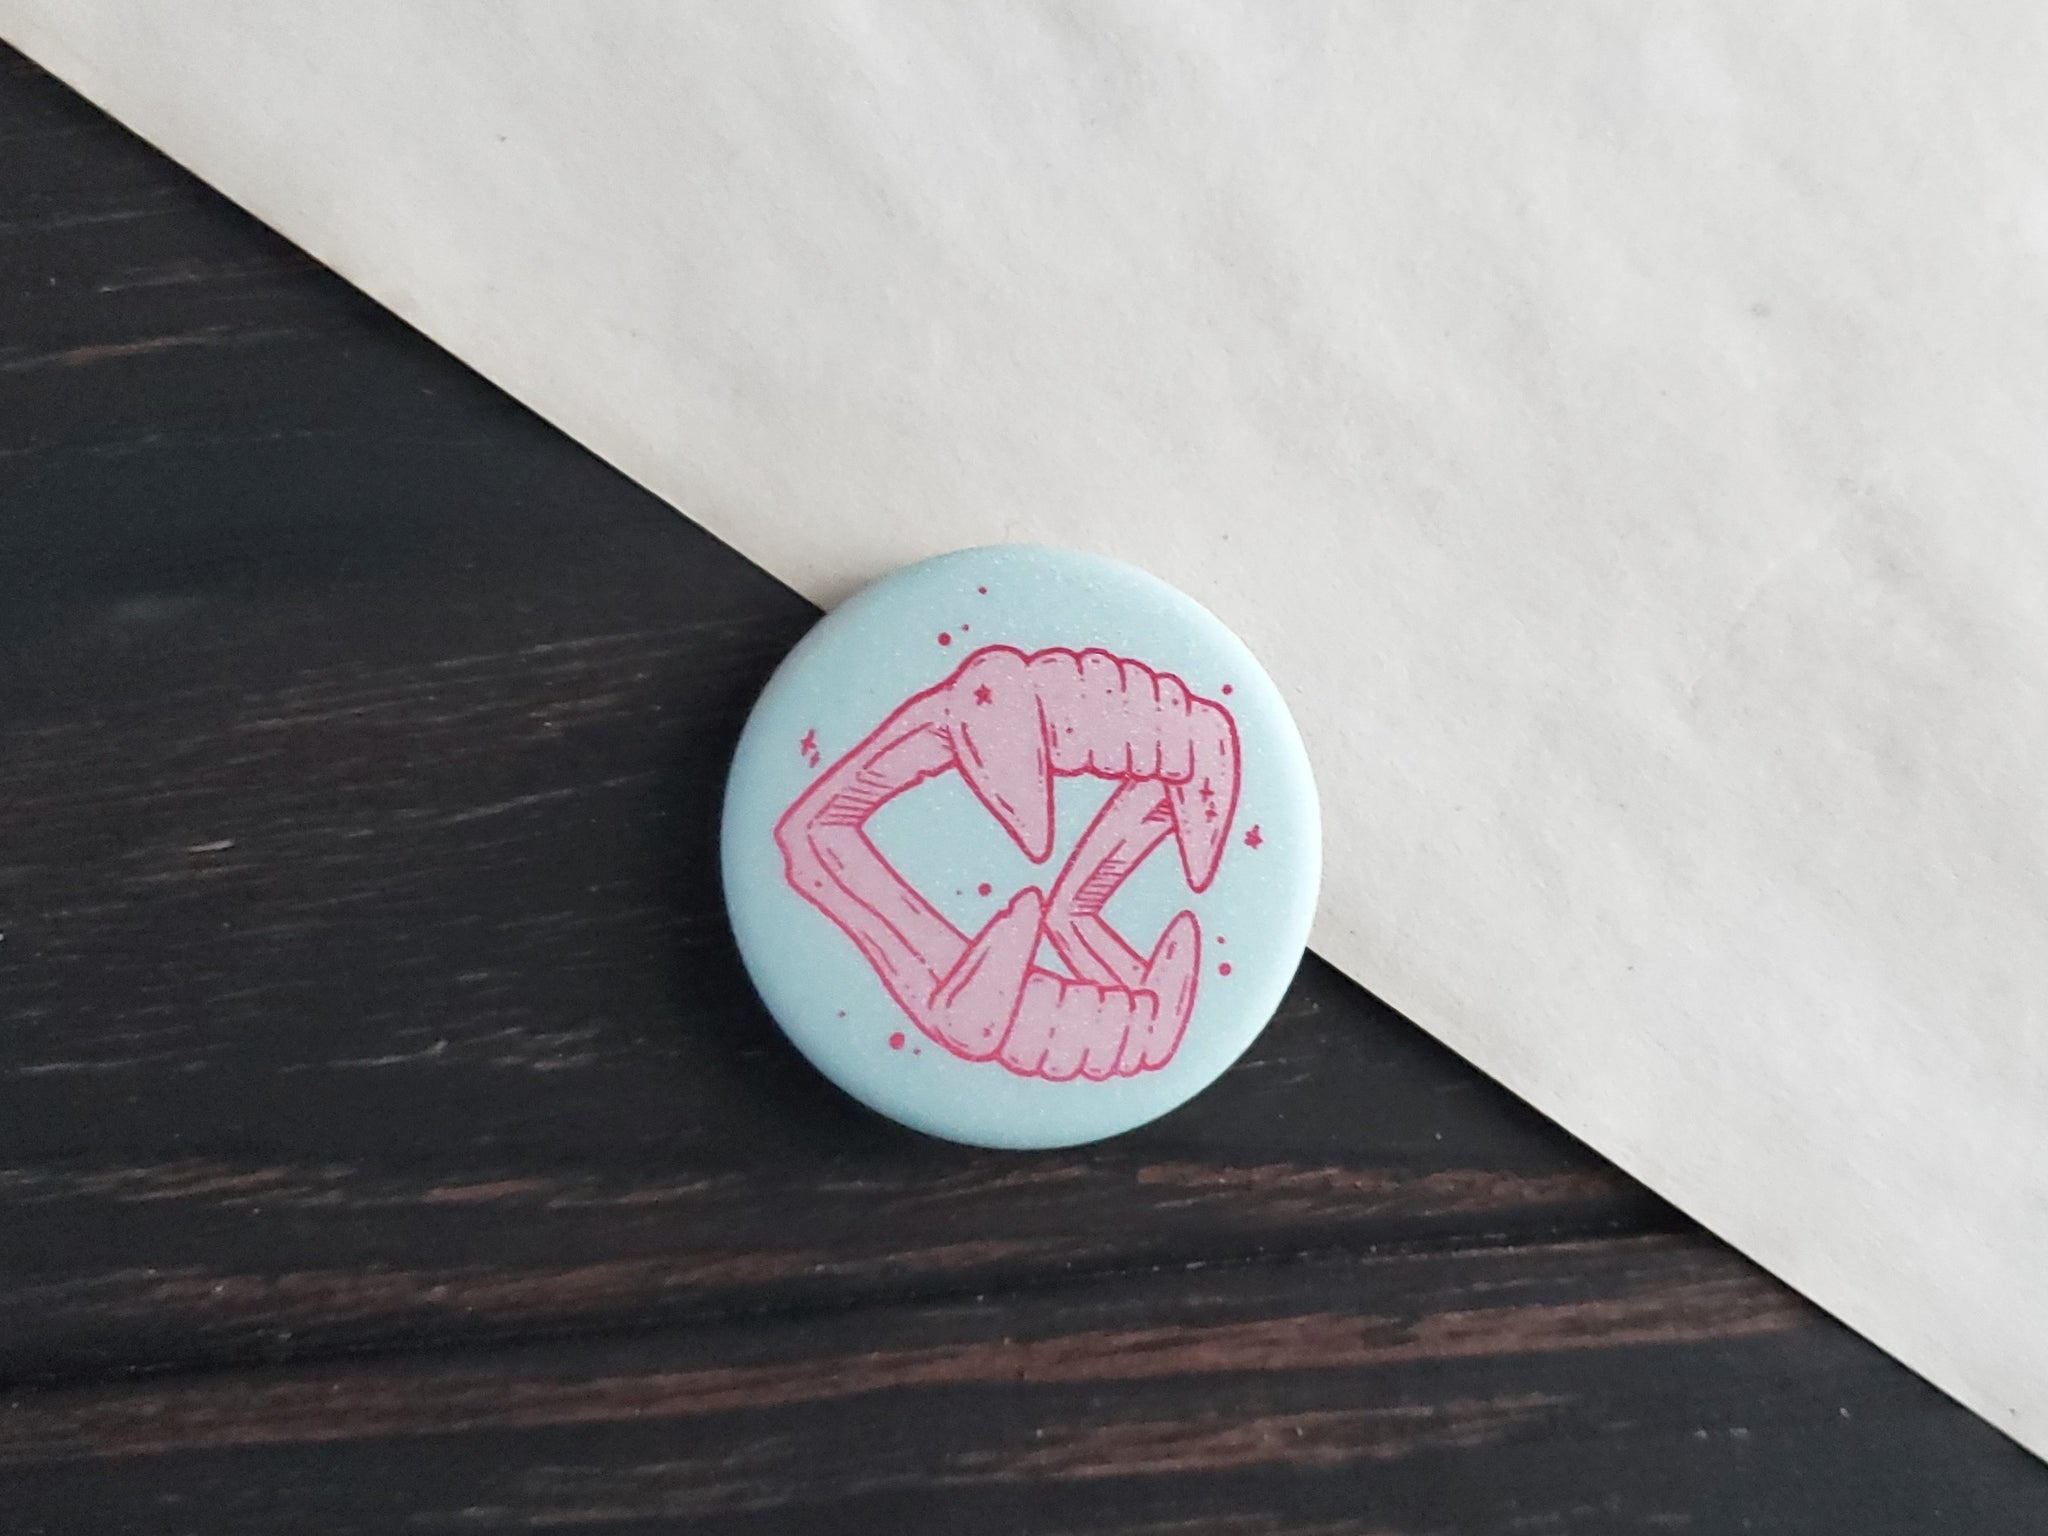 Pink Vampire Fangs pin badge